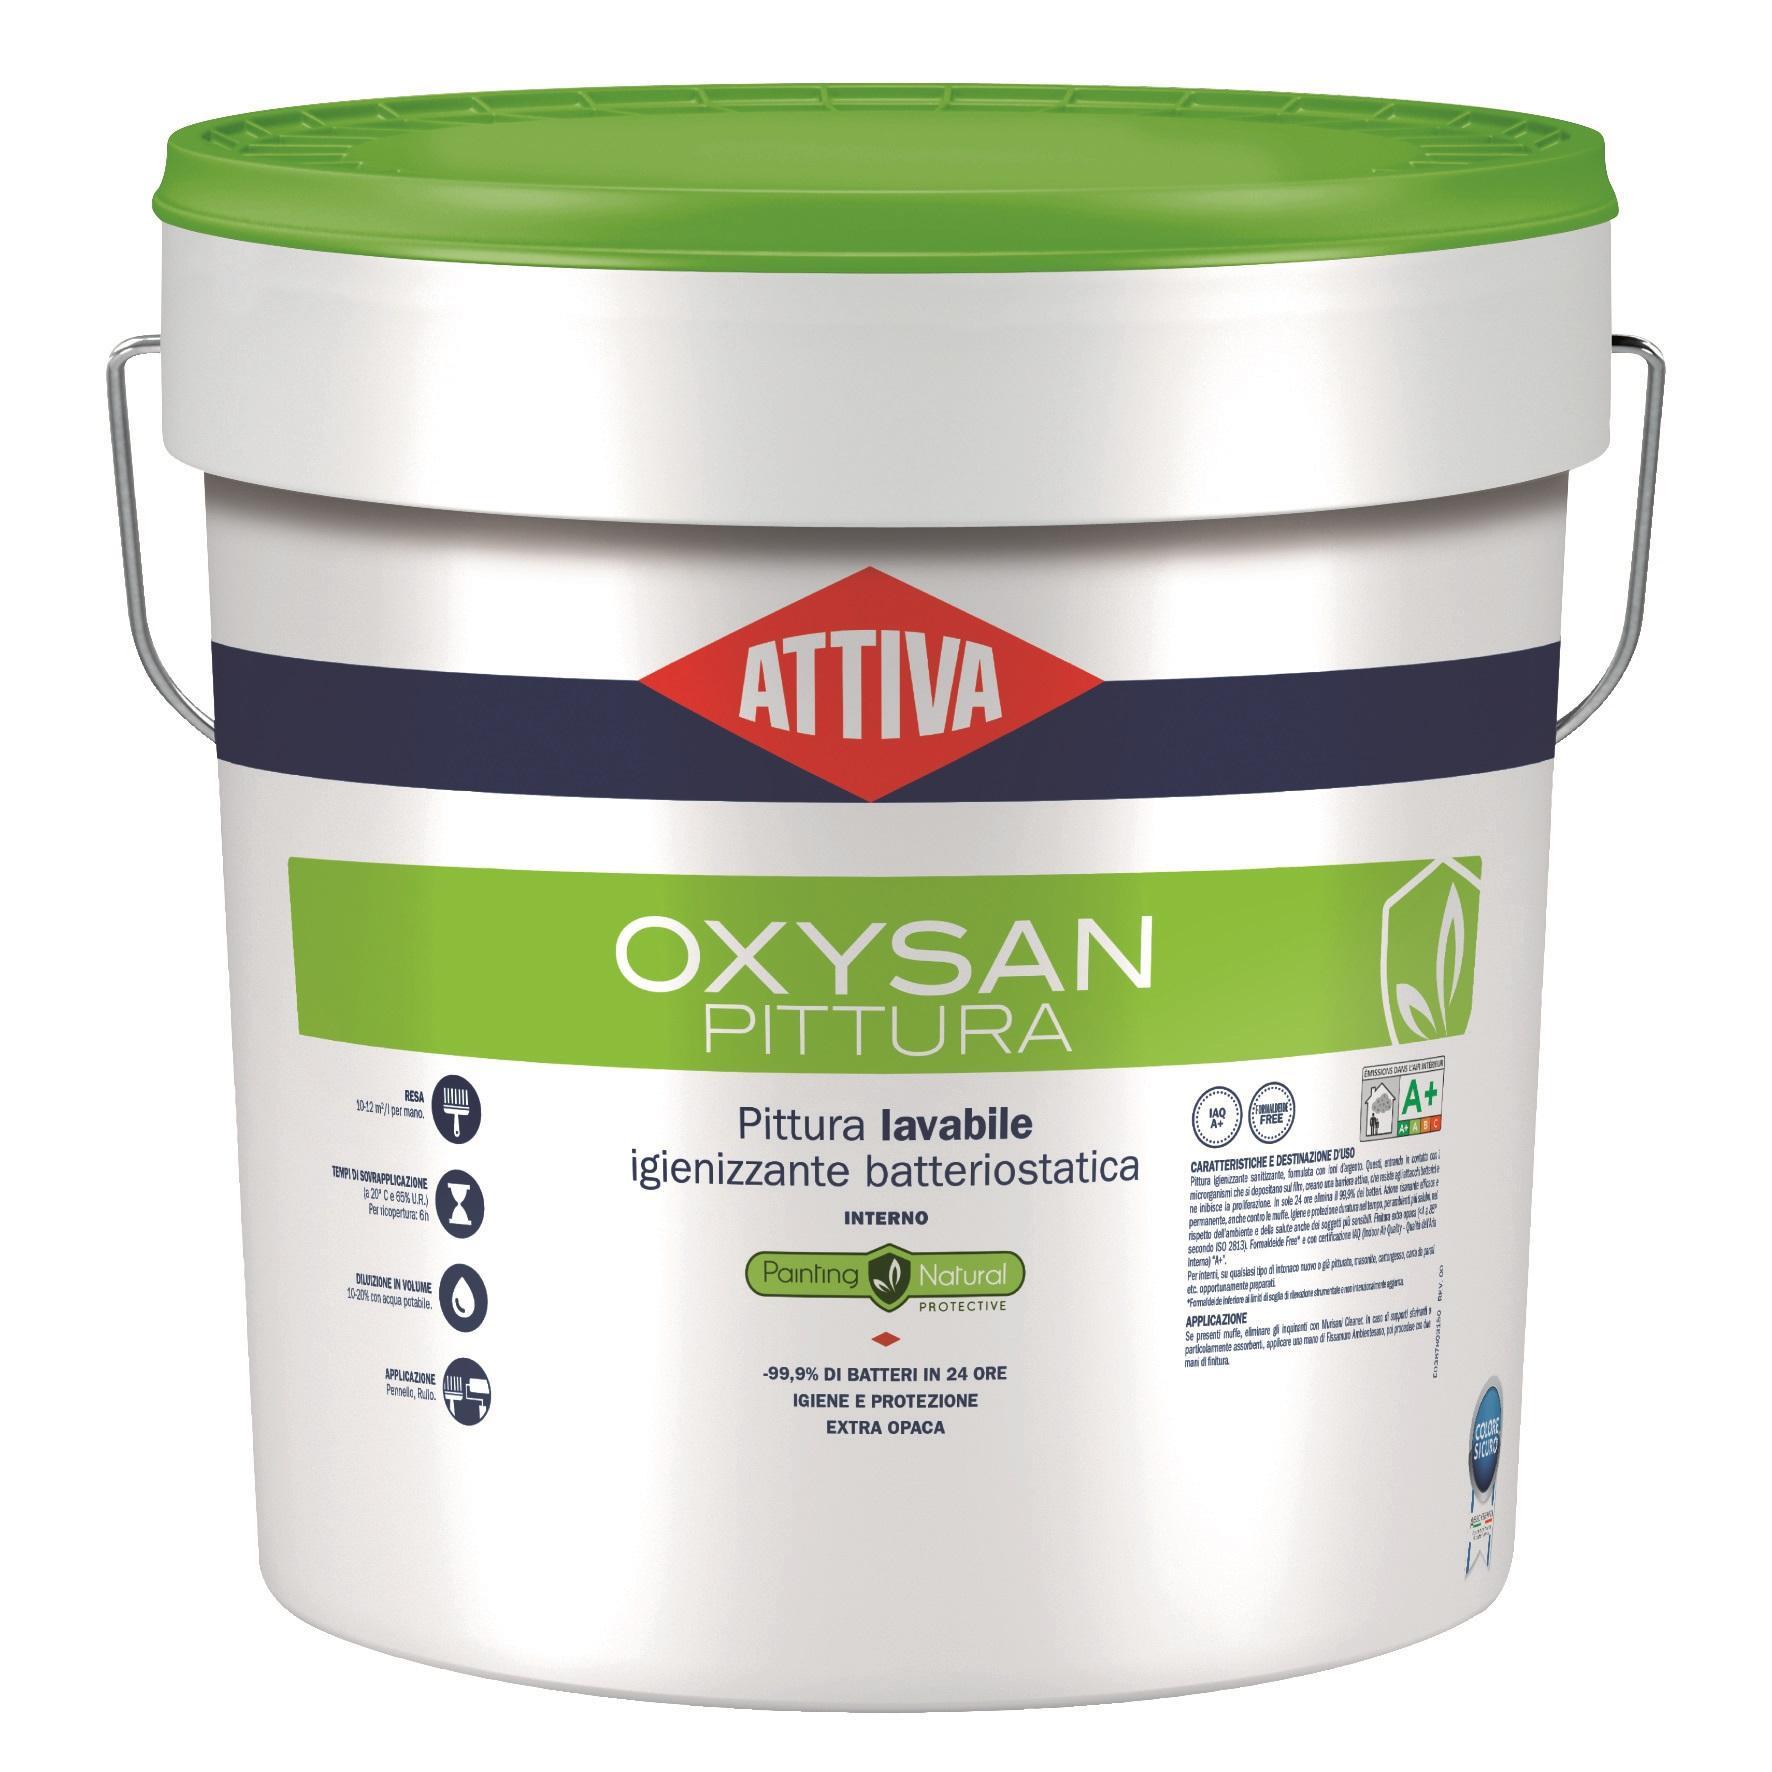 Attiva Oxysan pittura lavabile igienizzante anti batterica latta da 5 lt